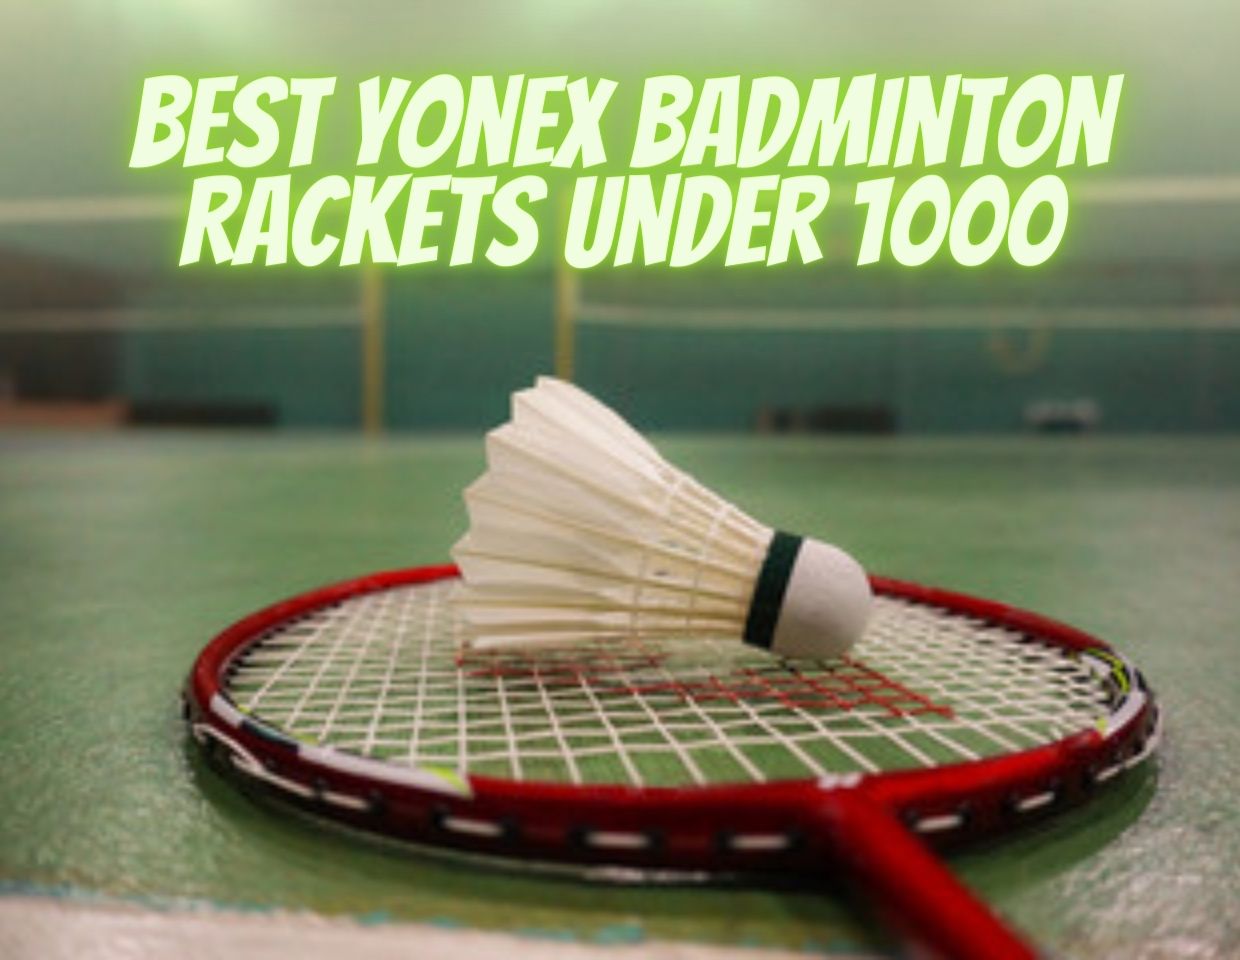 Best Yonex Badminton Rackets Under 1000